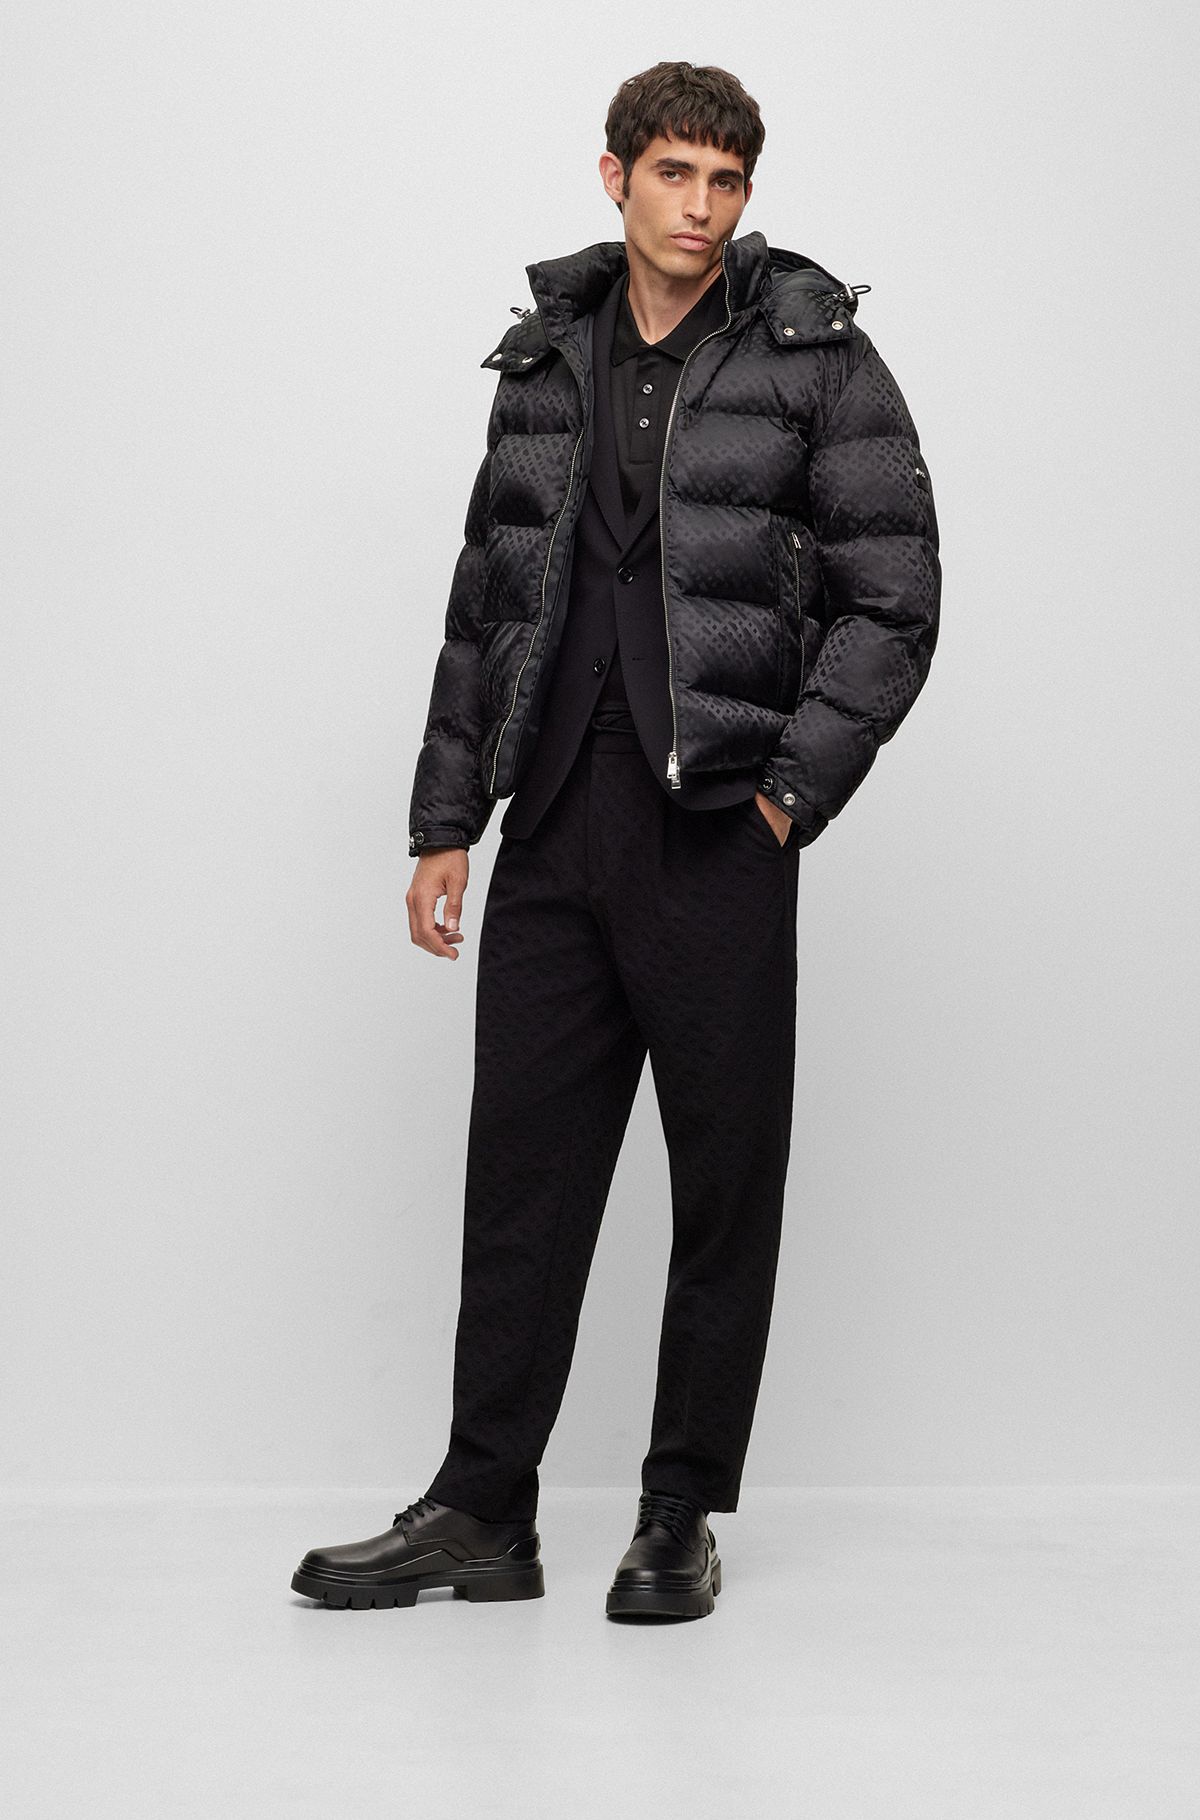 BRUMANO Black Quilted Sporty Coat Jacket Black Men Jackets